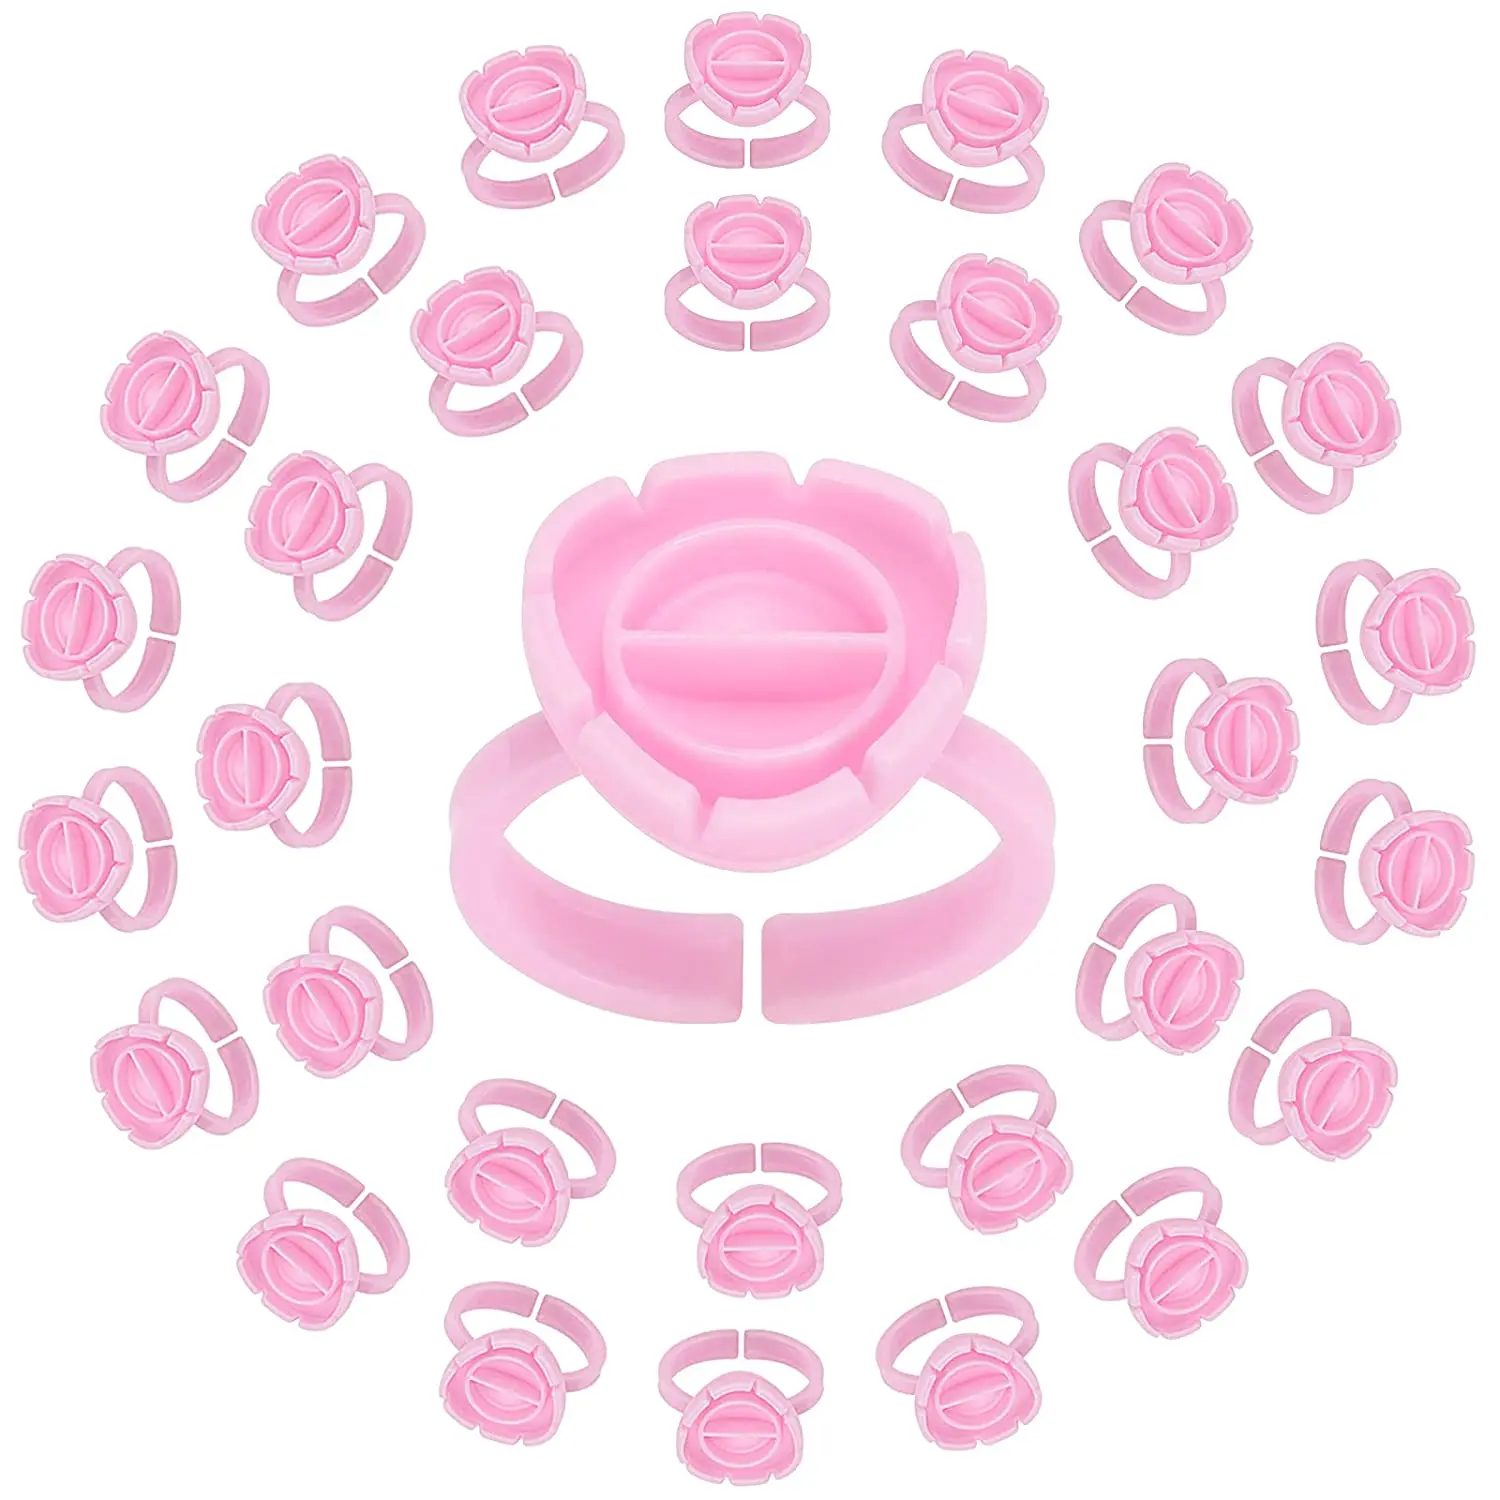 

Silicone Eyelash Extension Lash Glue Rings with Cute Eyelashes Extension Eyelash Lash Glue Holder Pink 100PCS Plastic 10 Bag, White pink